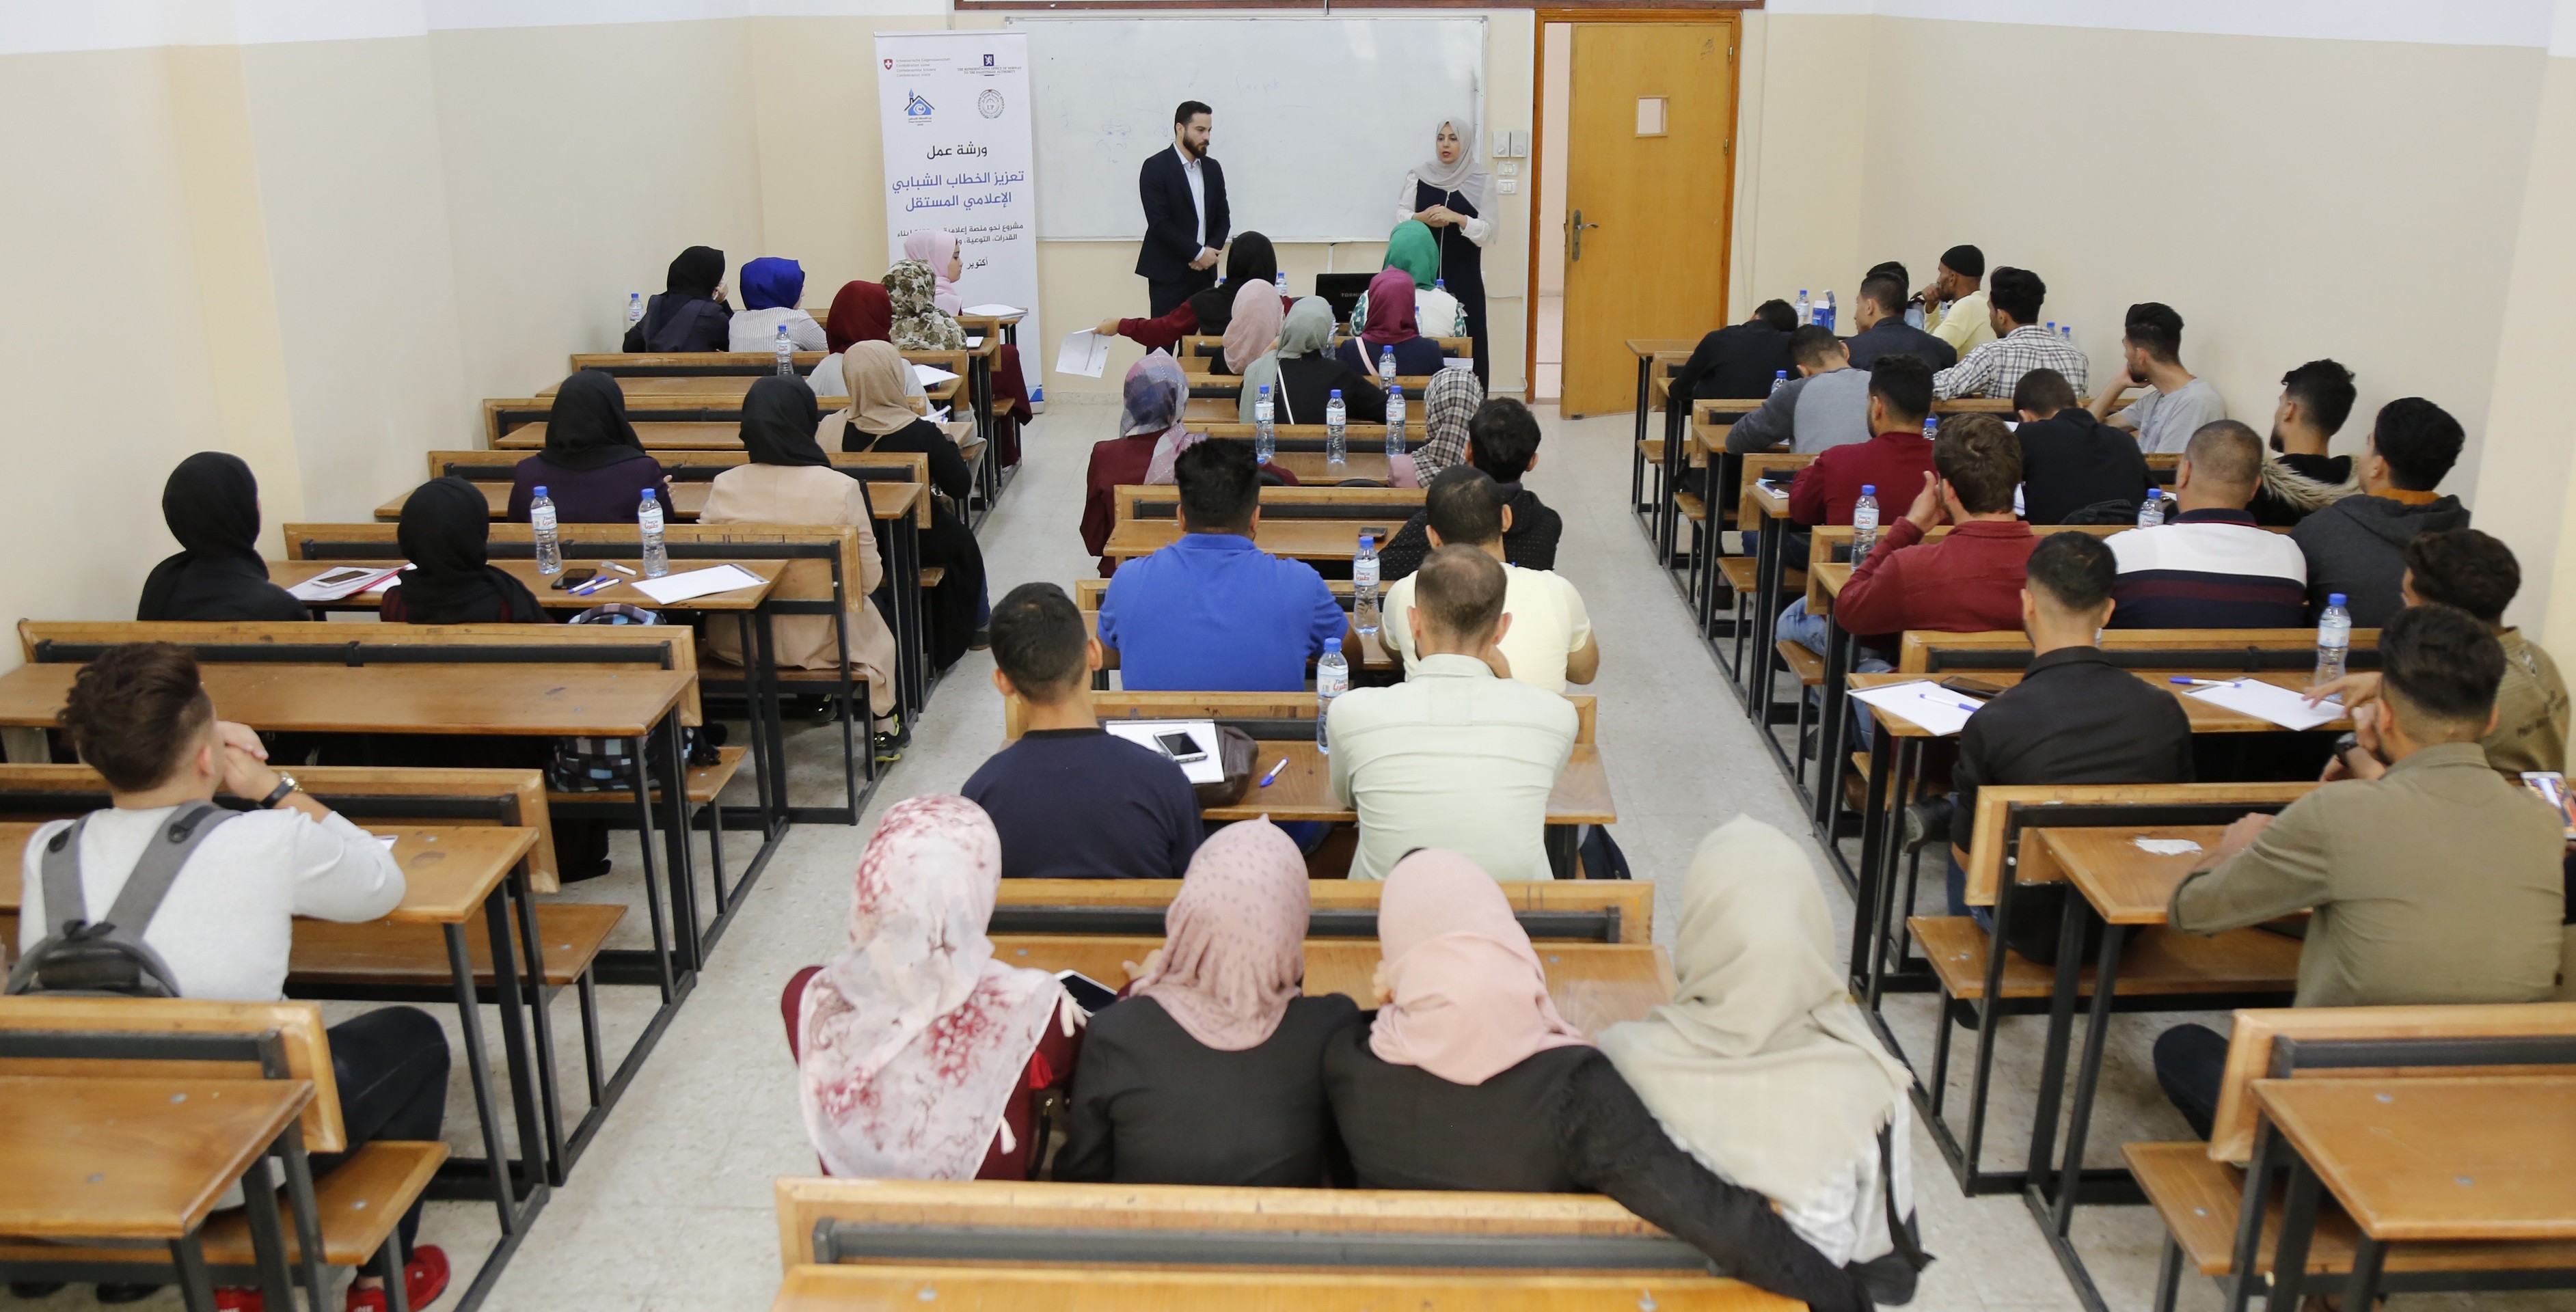 بيت الصحافة يختتم ورش عمل حول تعزيز الخطاب الشبابي الإعلامي المستقل في الجامعات الفلسطينية بقطاع غزة